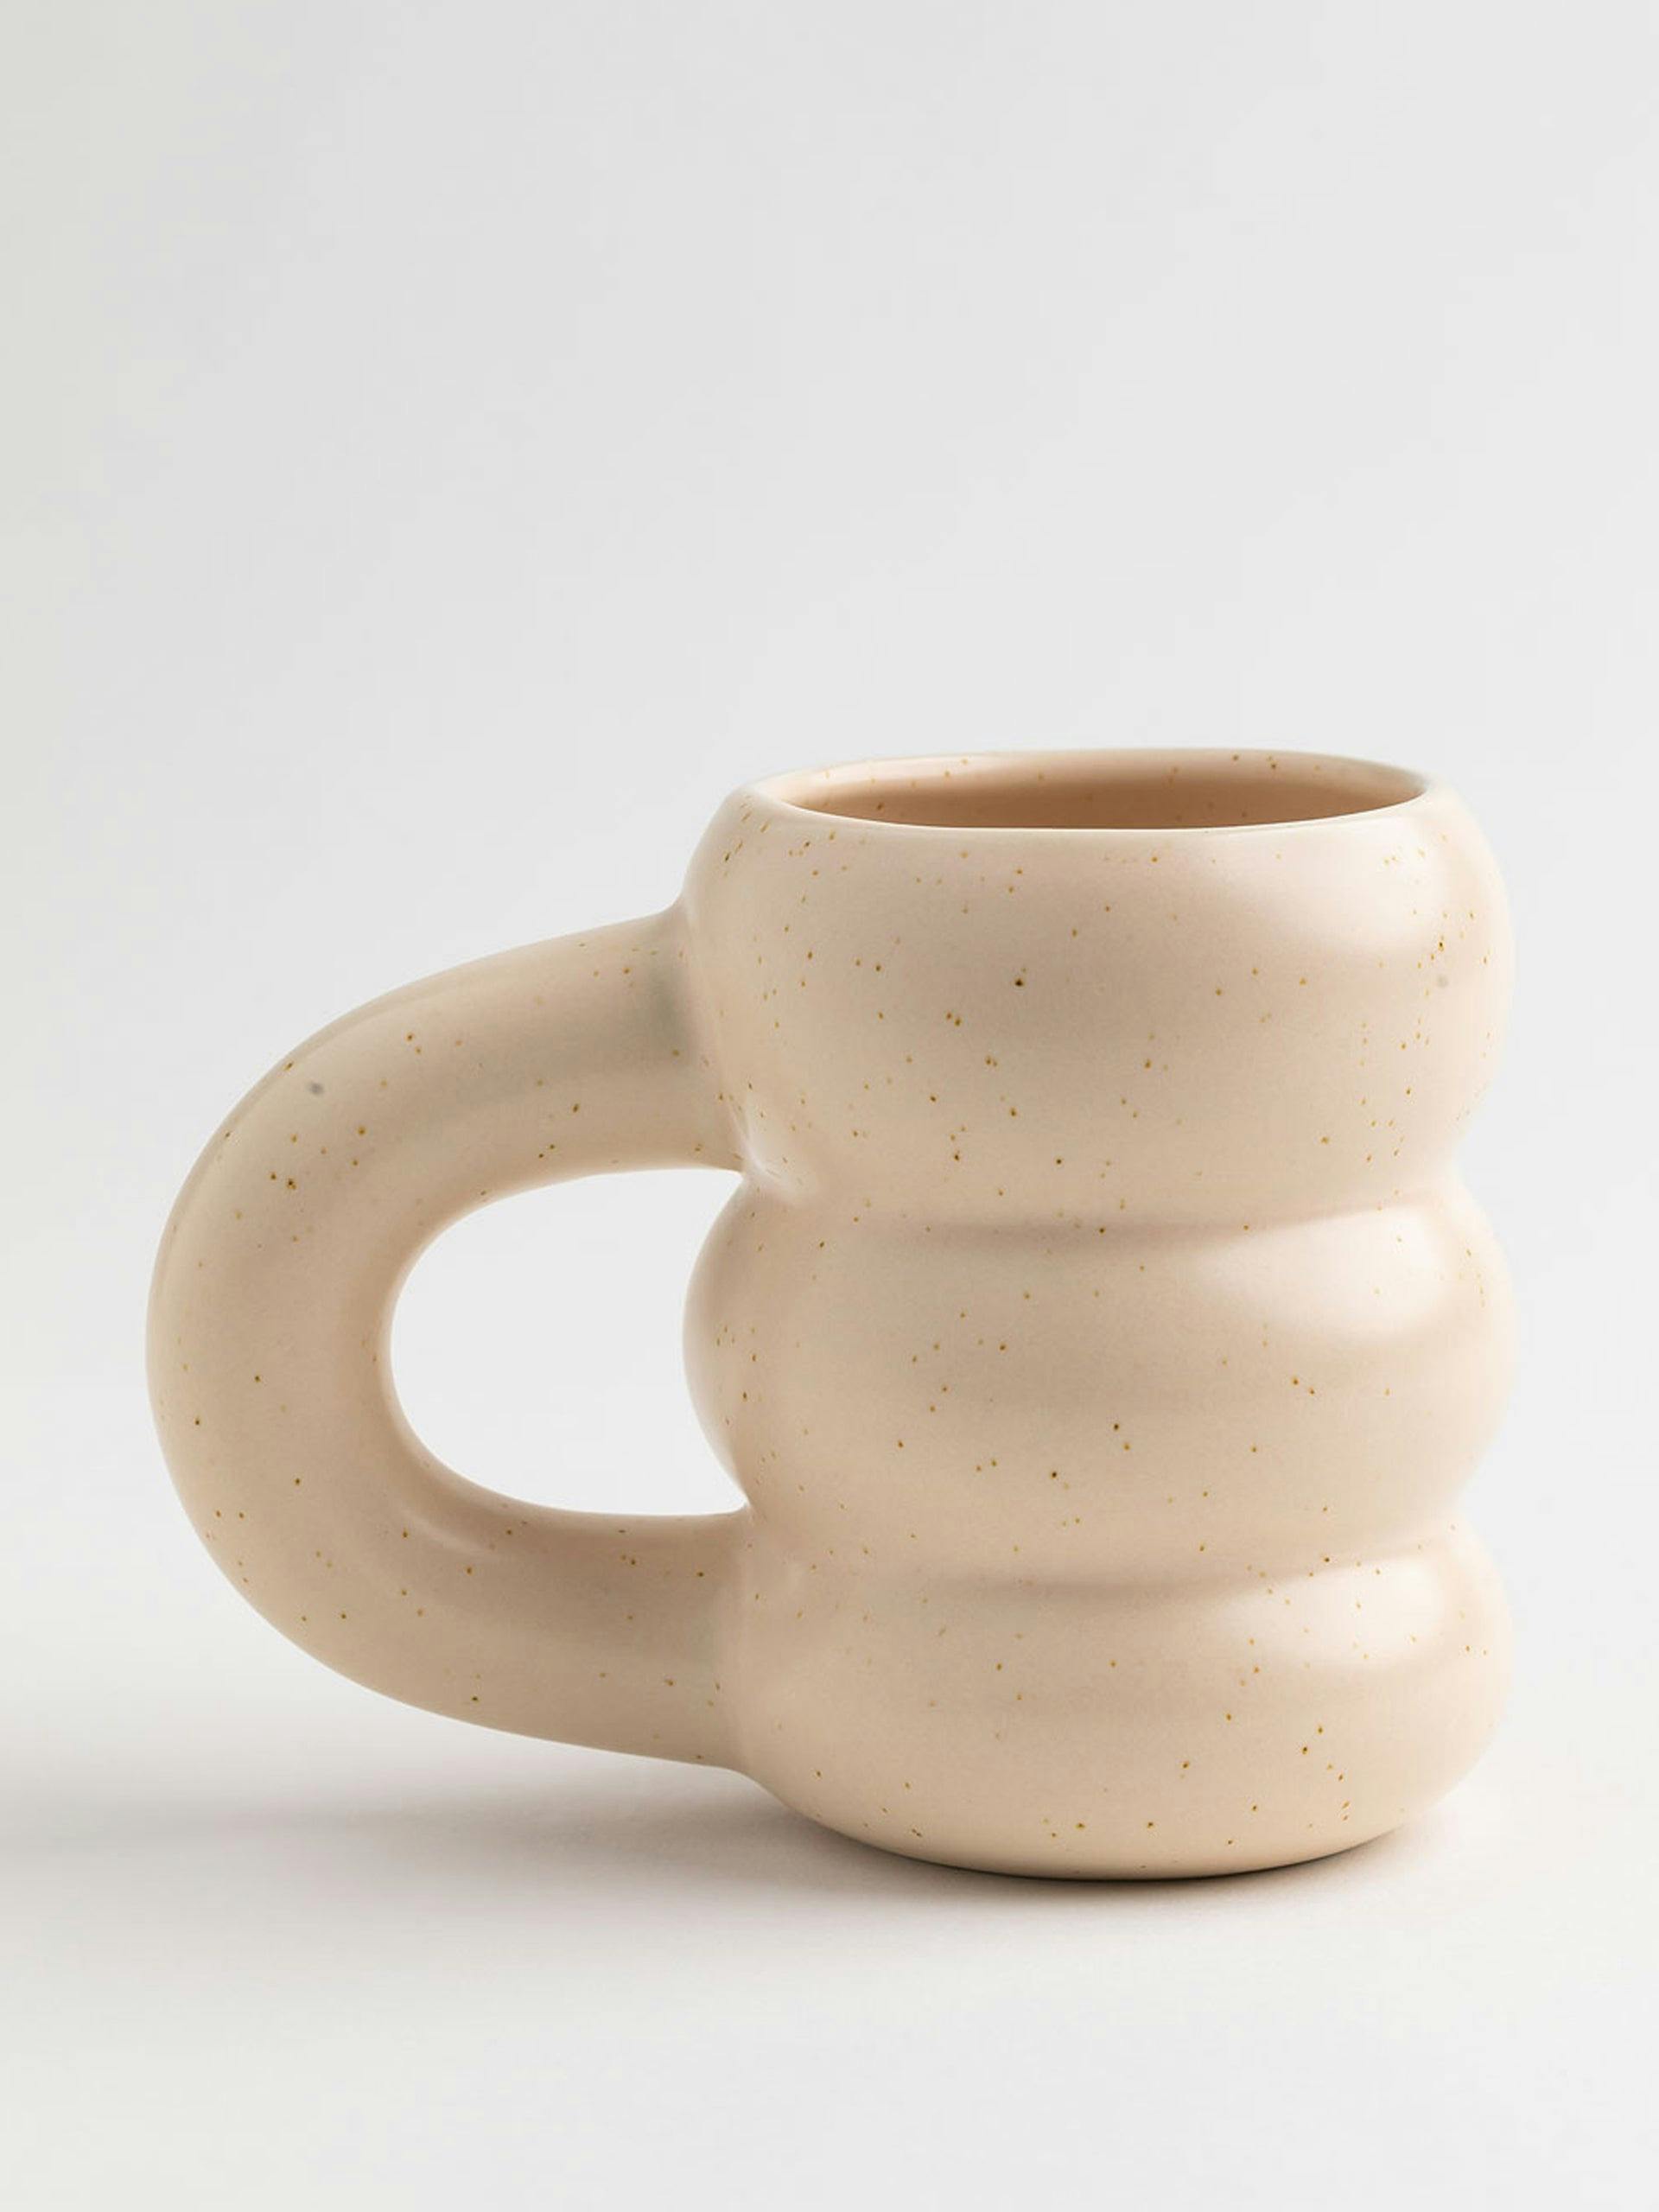 Ceramic coffee mug in beige vintage